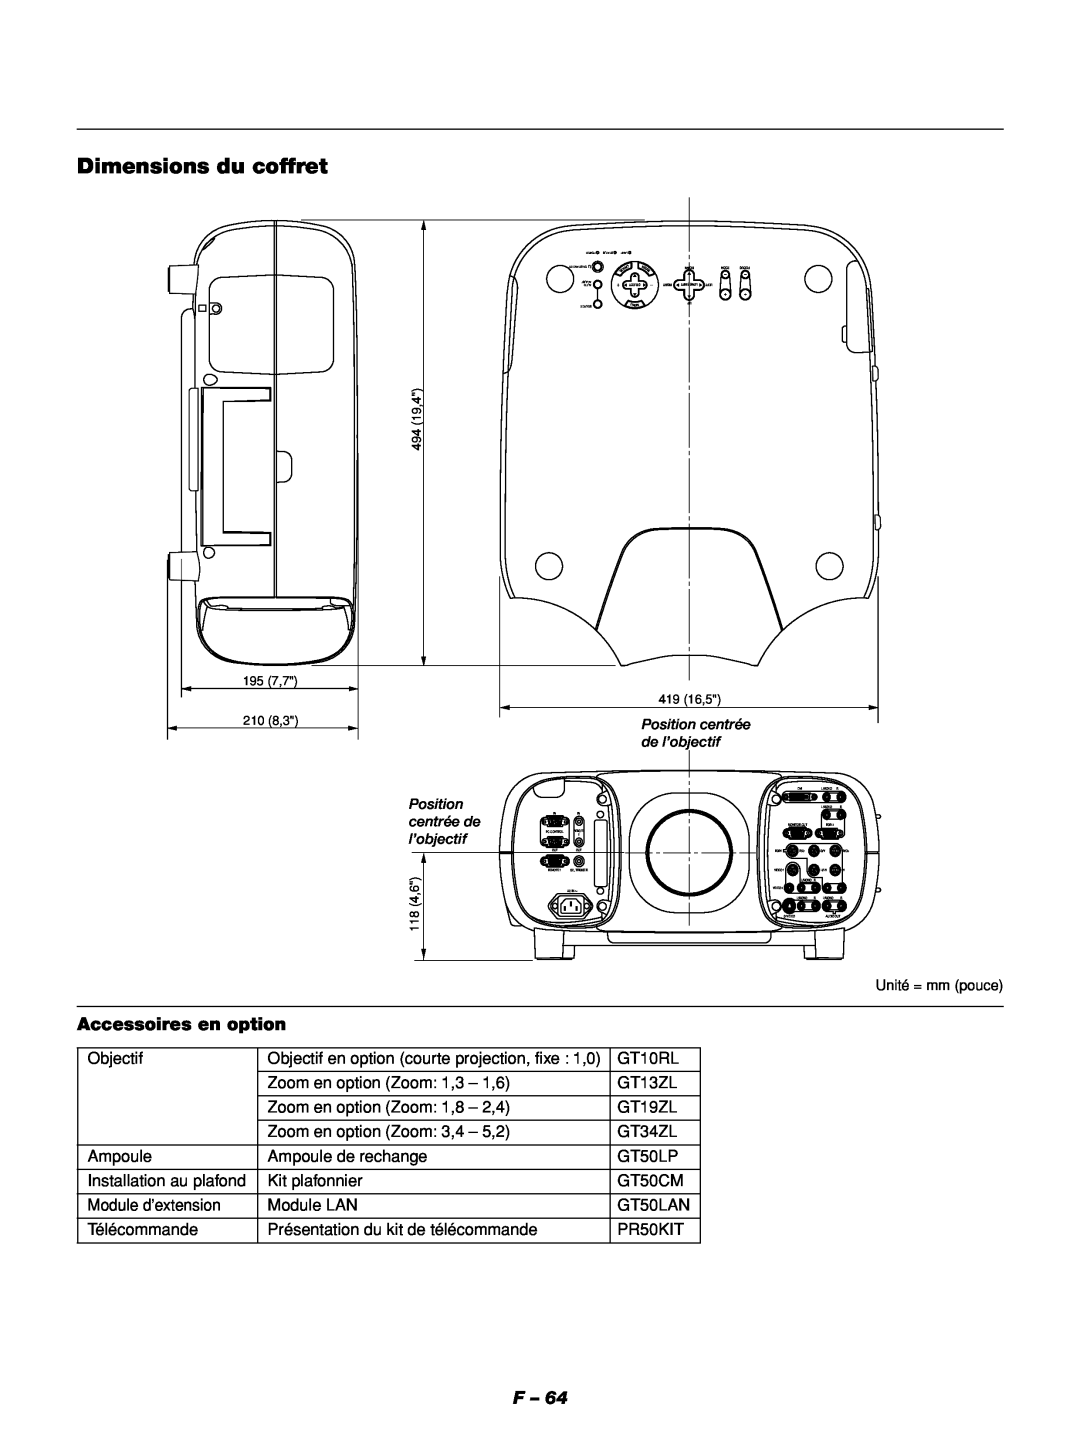 NEC GT1150 manuel dutilisation Dimensions du coffret, Accessoires en option 